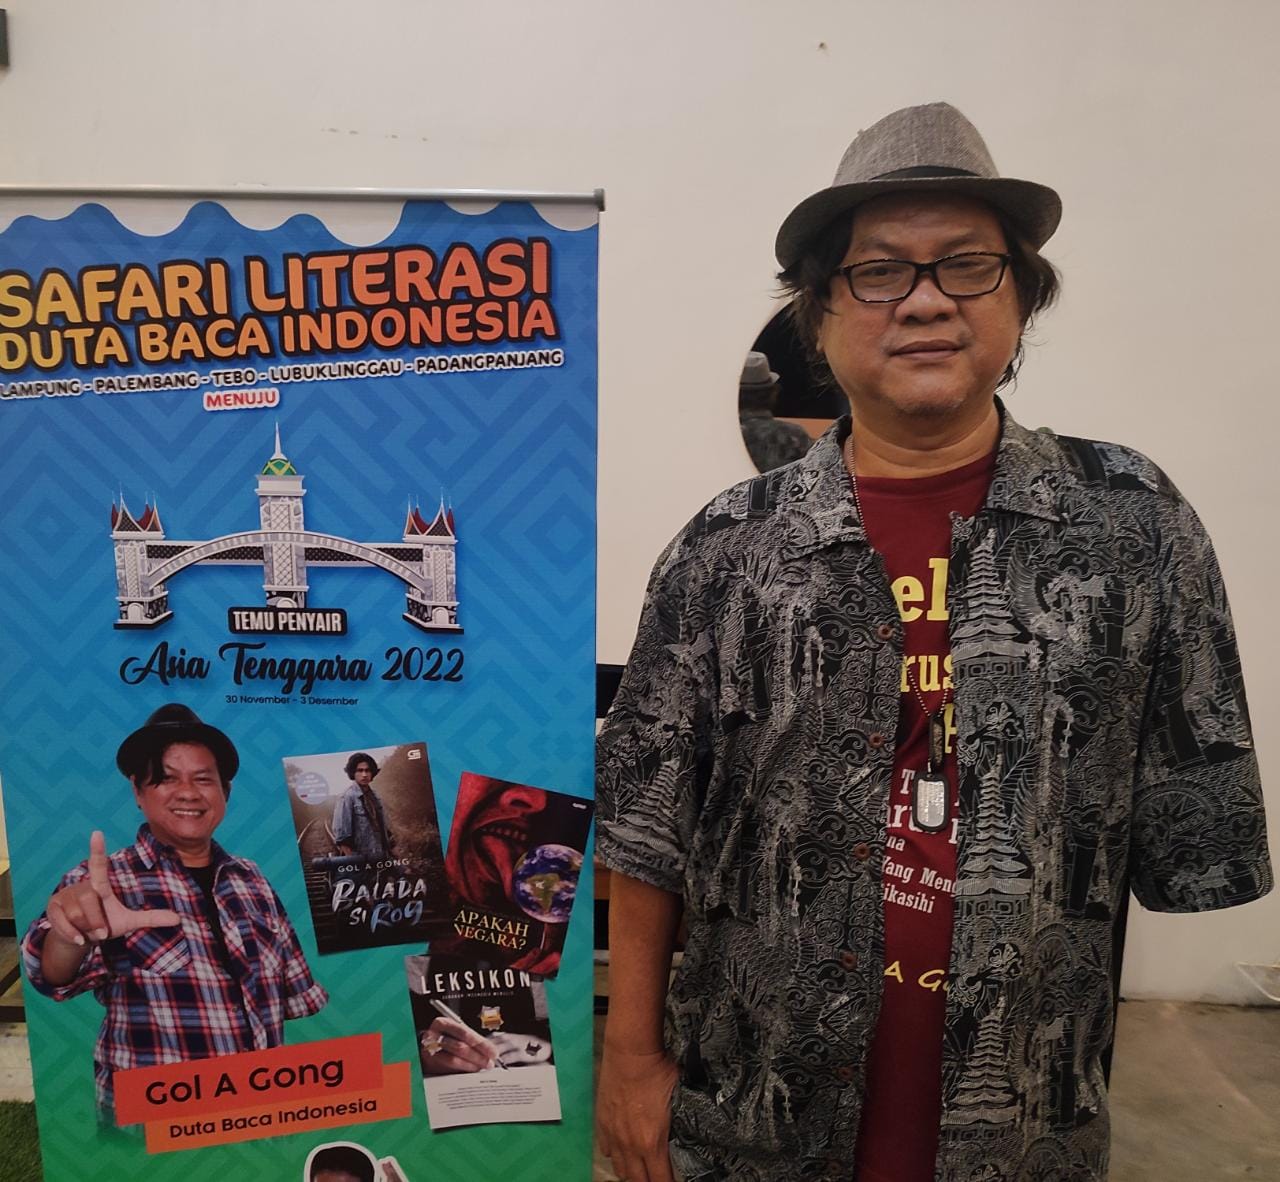 Ini Tips Menulis Ala Duta Baca Indonesia Ketika Berkunjung ke Palembang